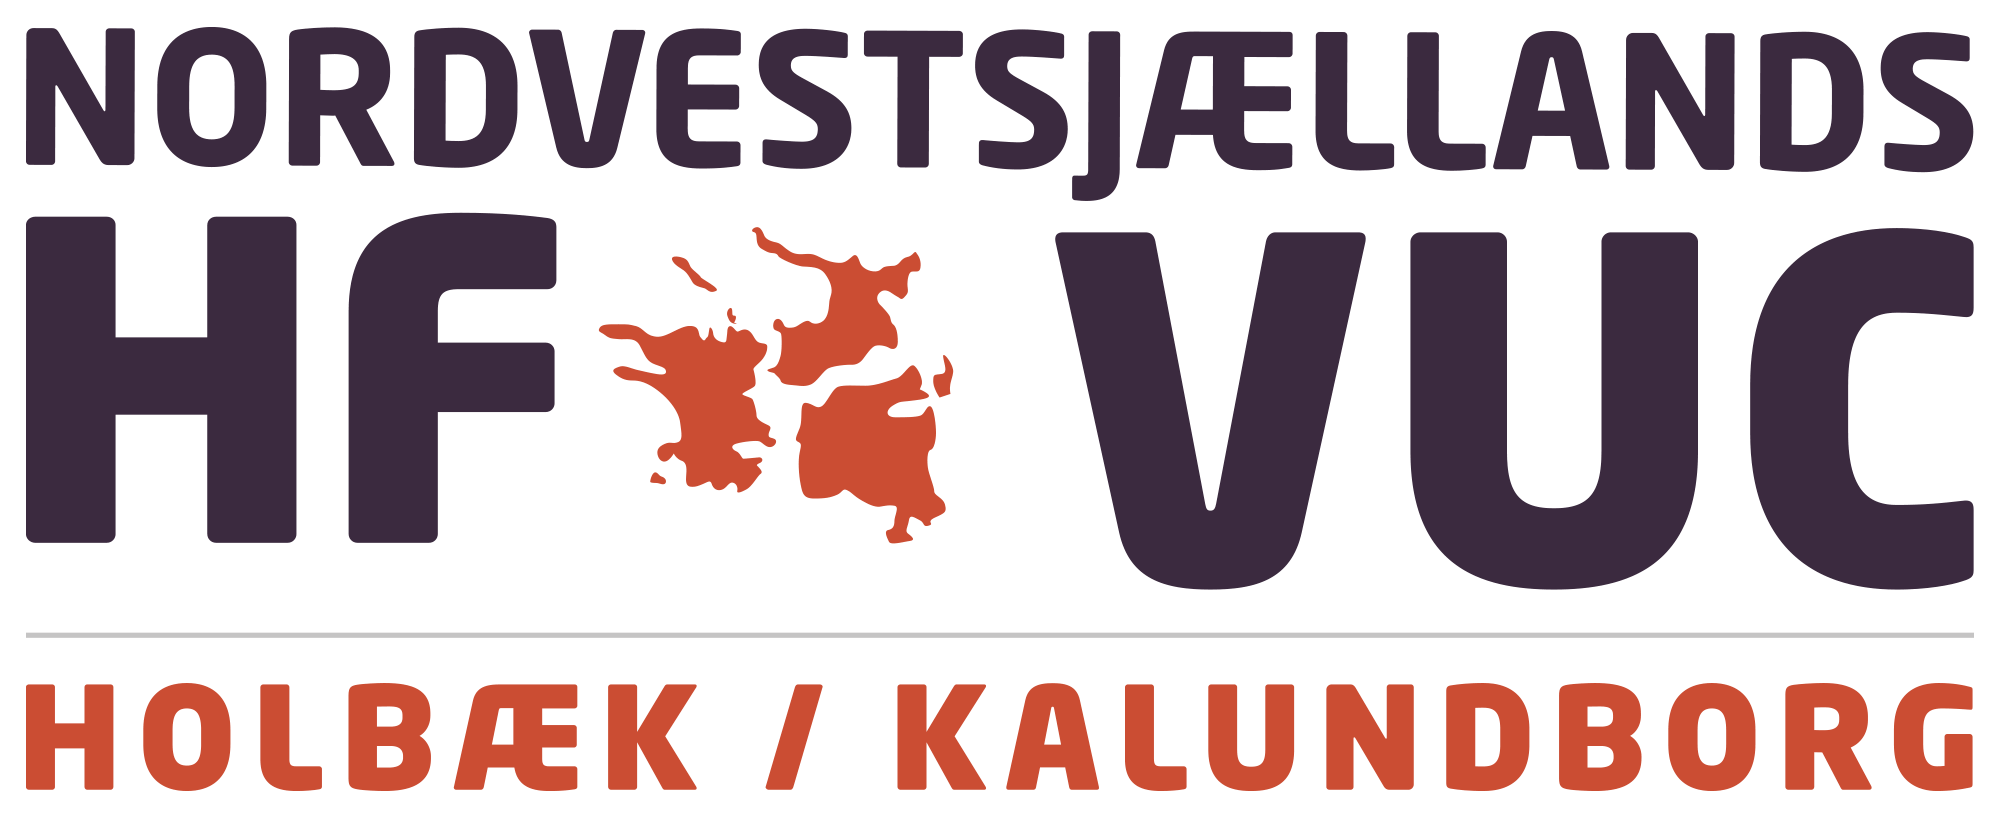 Logo Nordvestsjællands HF og VUC